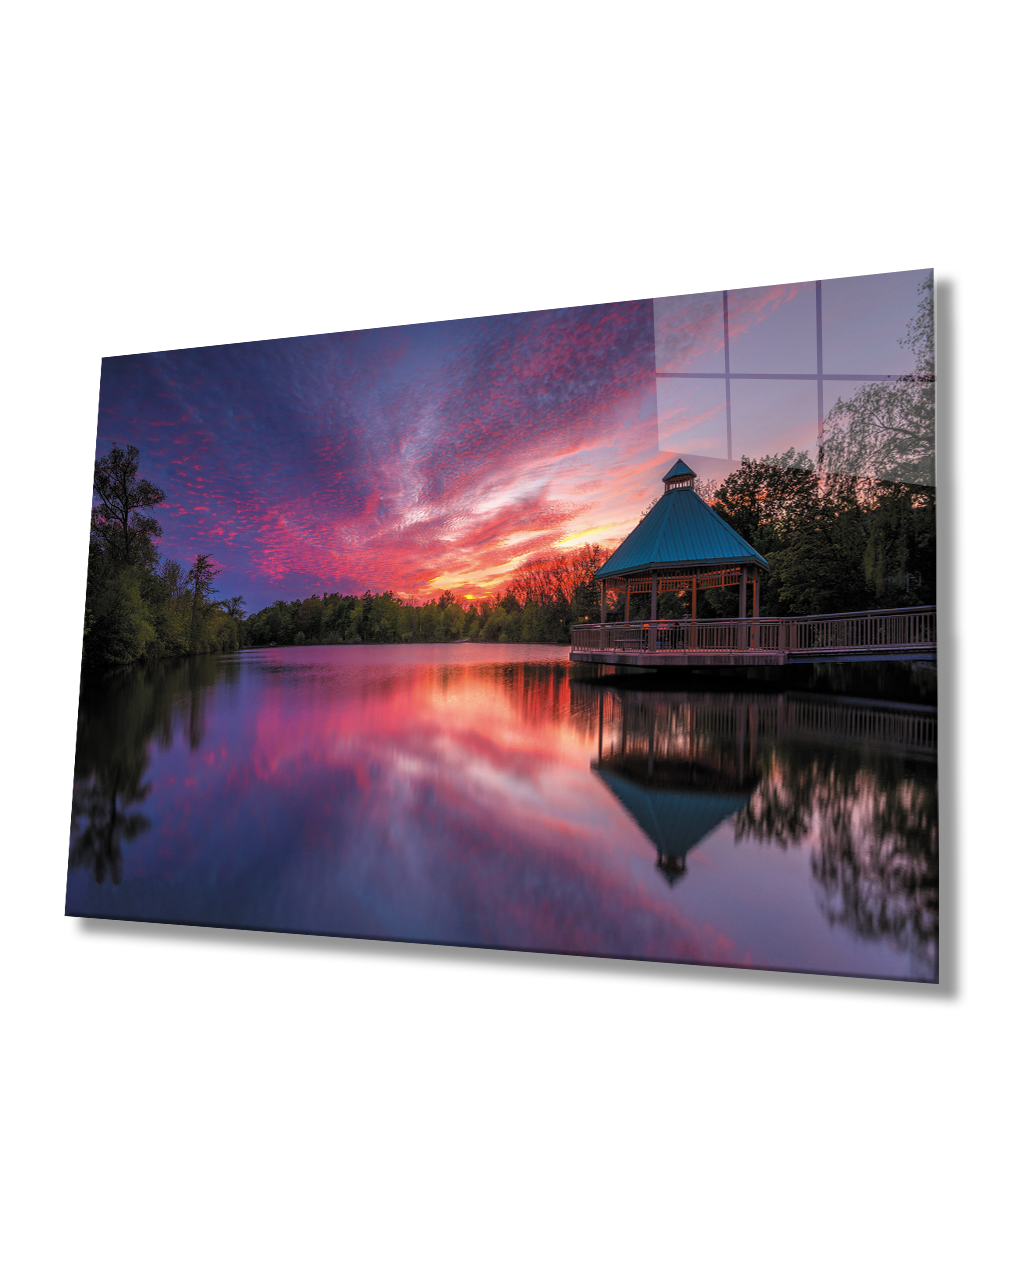 Gün Batımı Manzara Kamelya Cam Tablo  4mm Dayanıklı Temperli Cam Sunset Landscape Camellia Glass Table 4mm Durable Tempered Glass